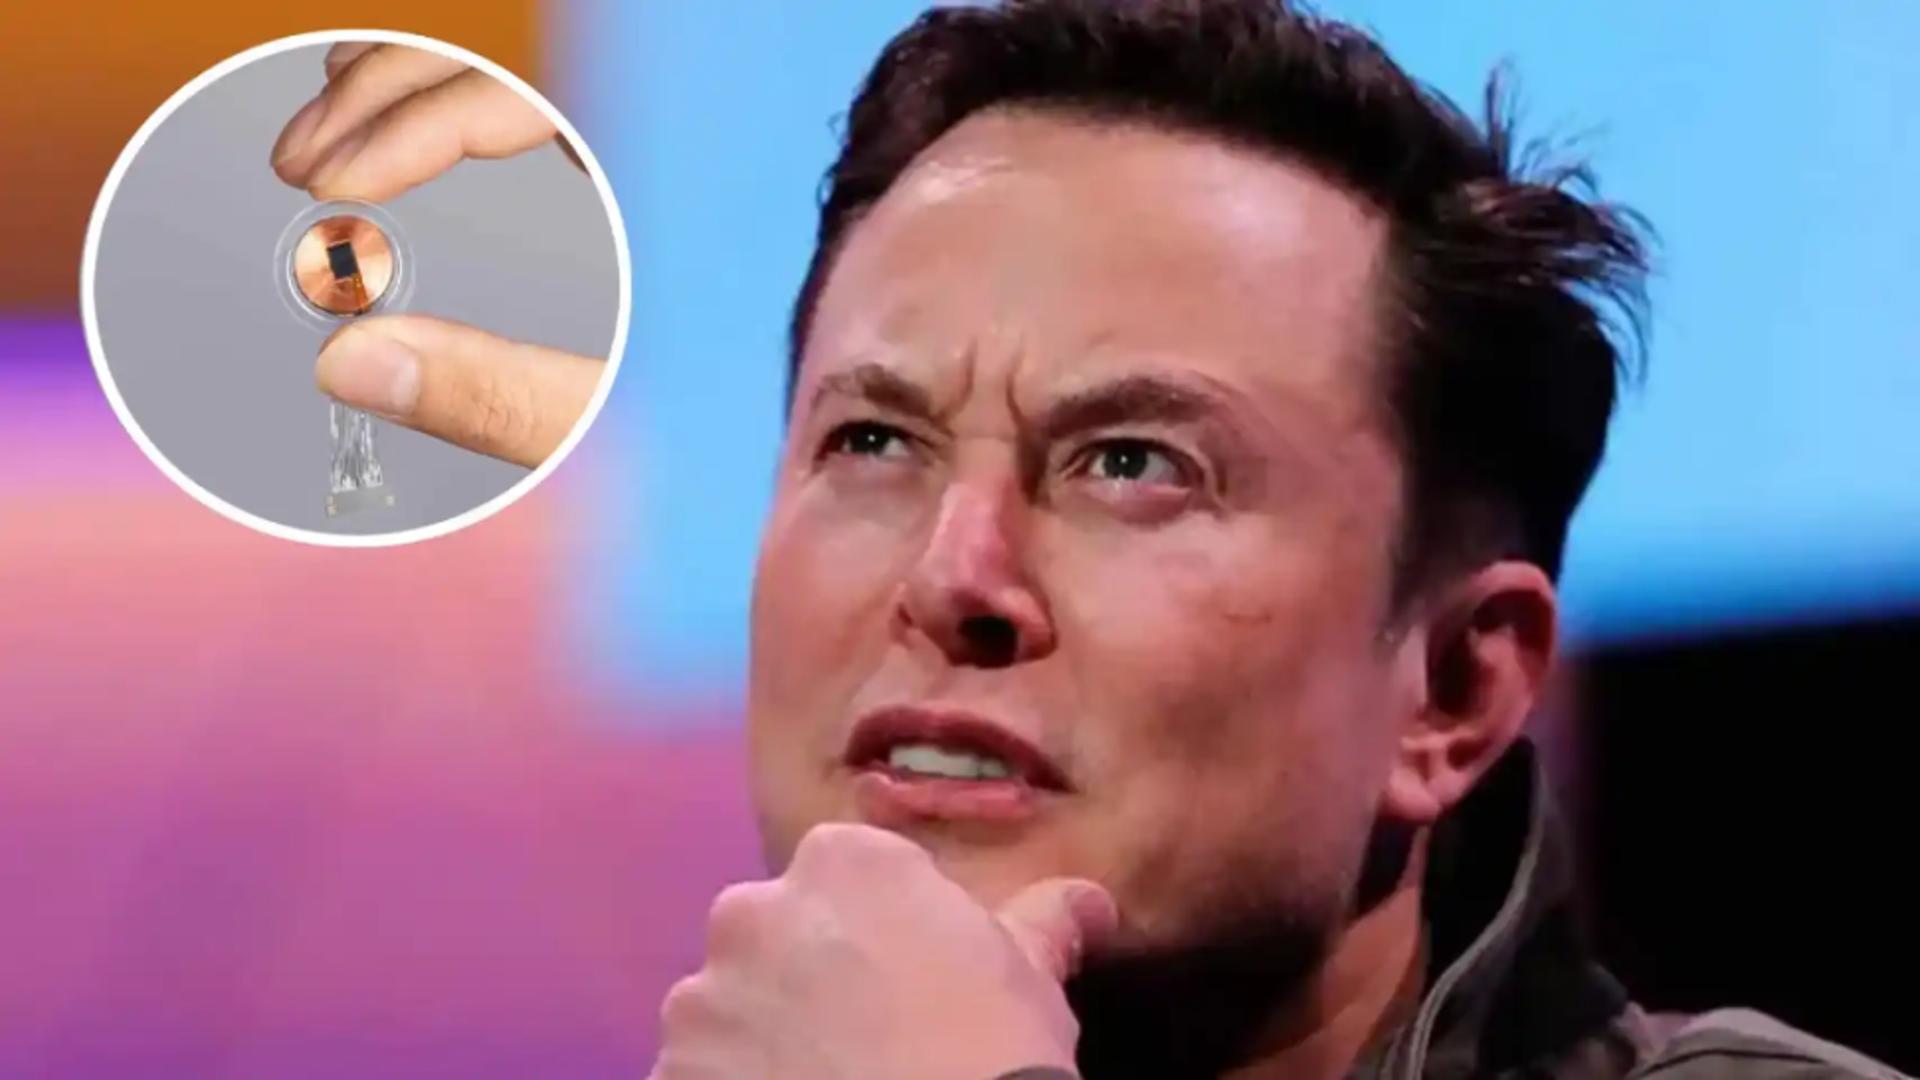 Implantul cerebral al lui Elon Musk s-a stricat în creierul pacientului. Neuralink fost nevoit să recunoască, într-un final